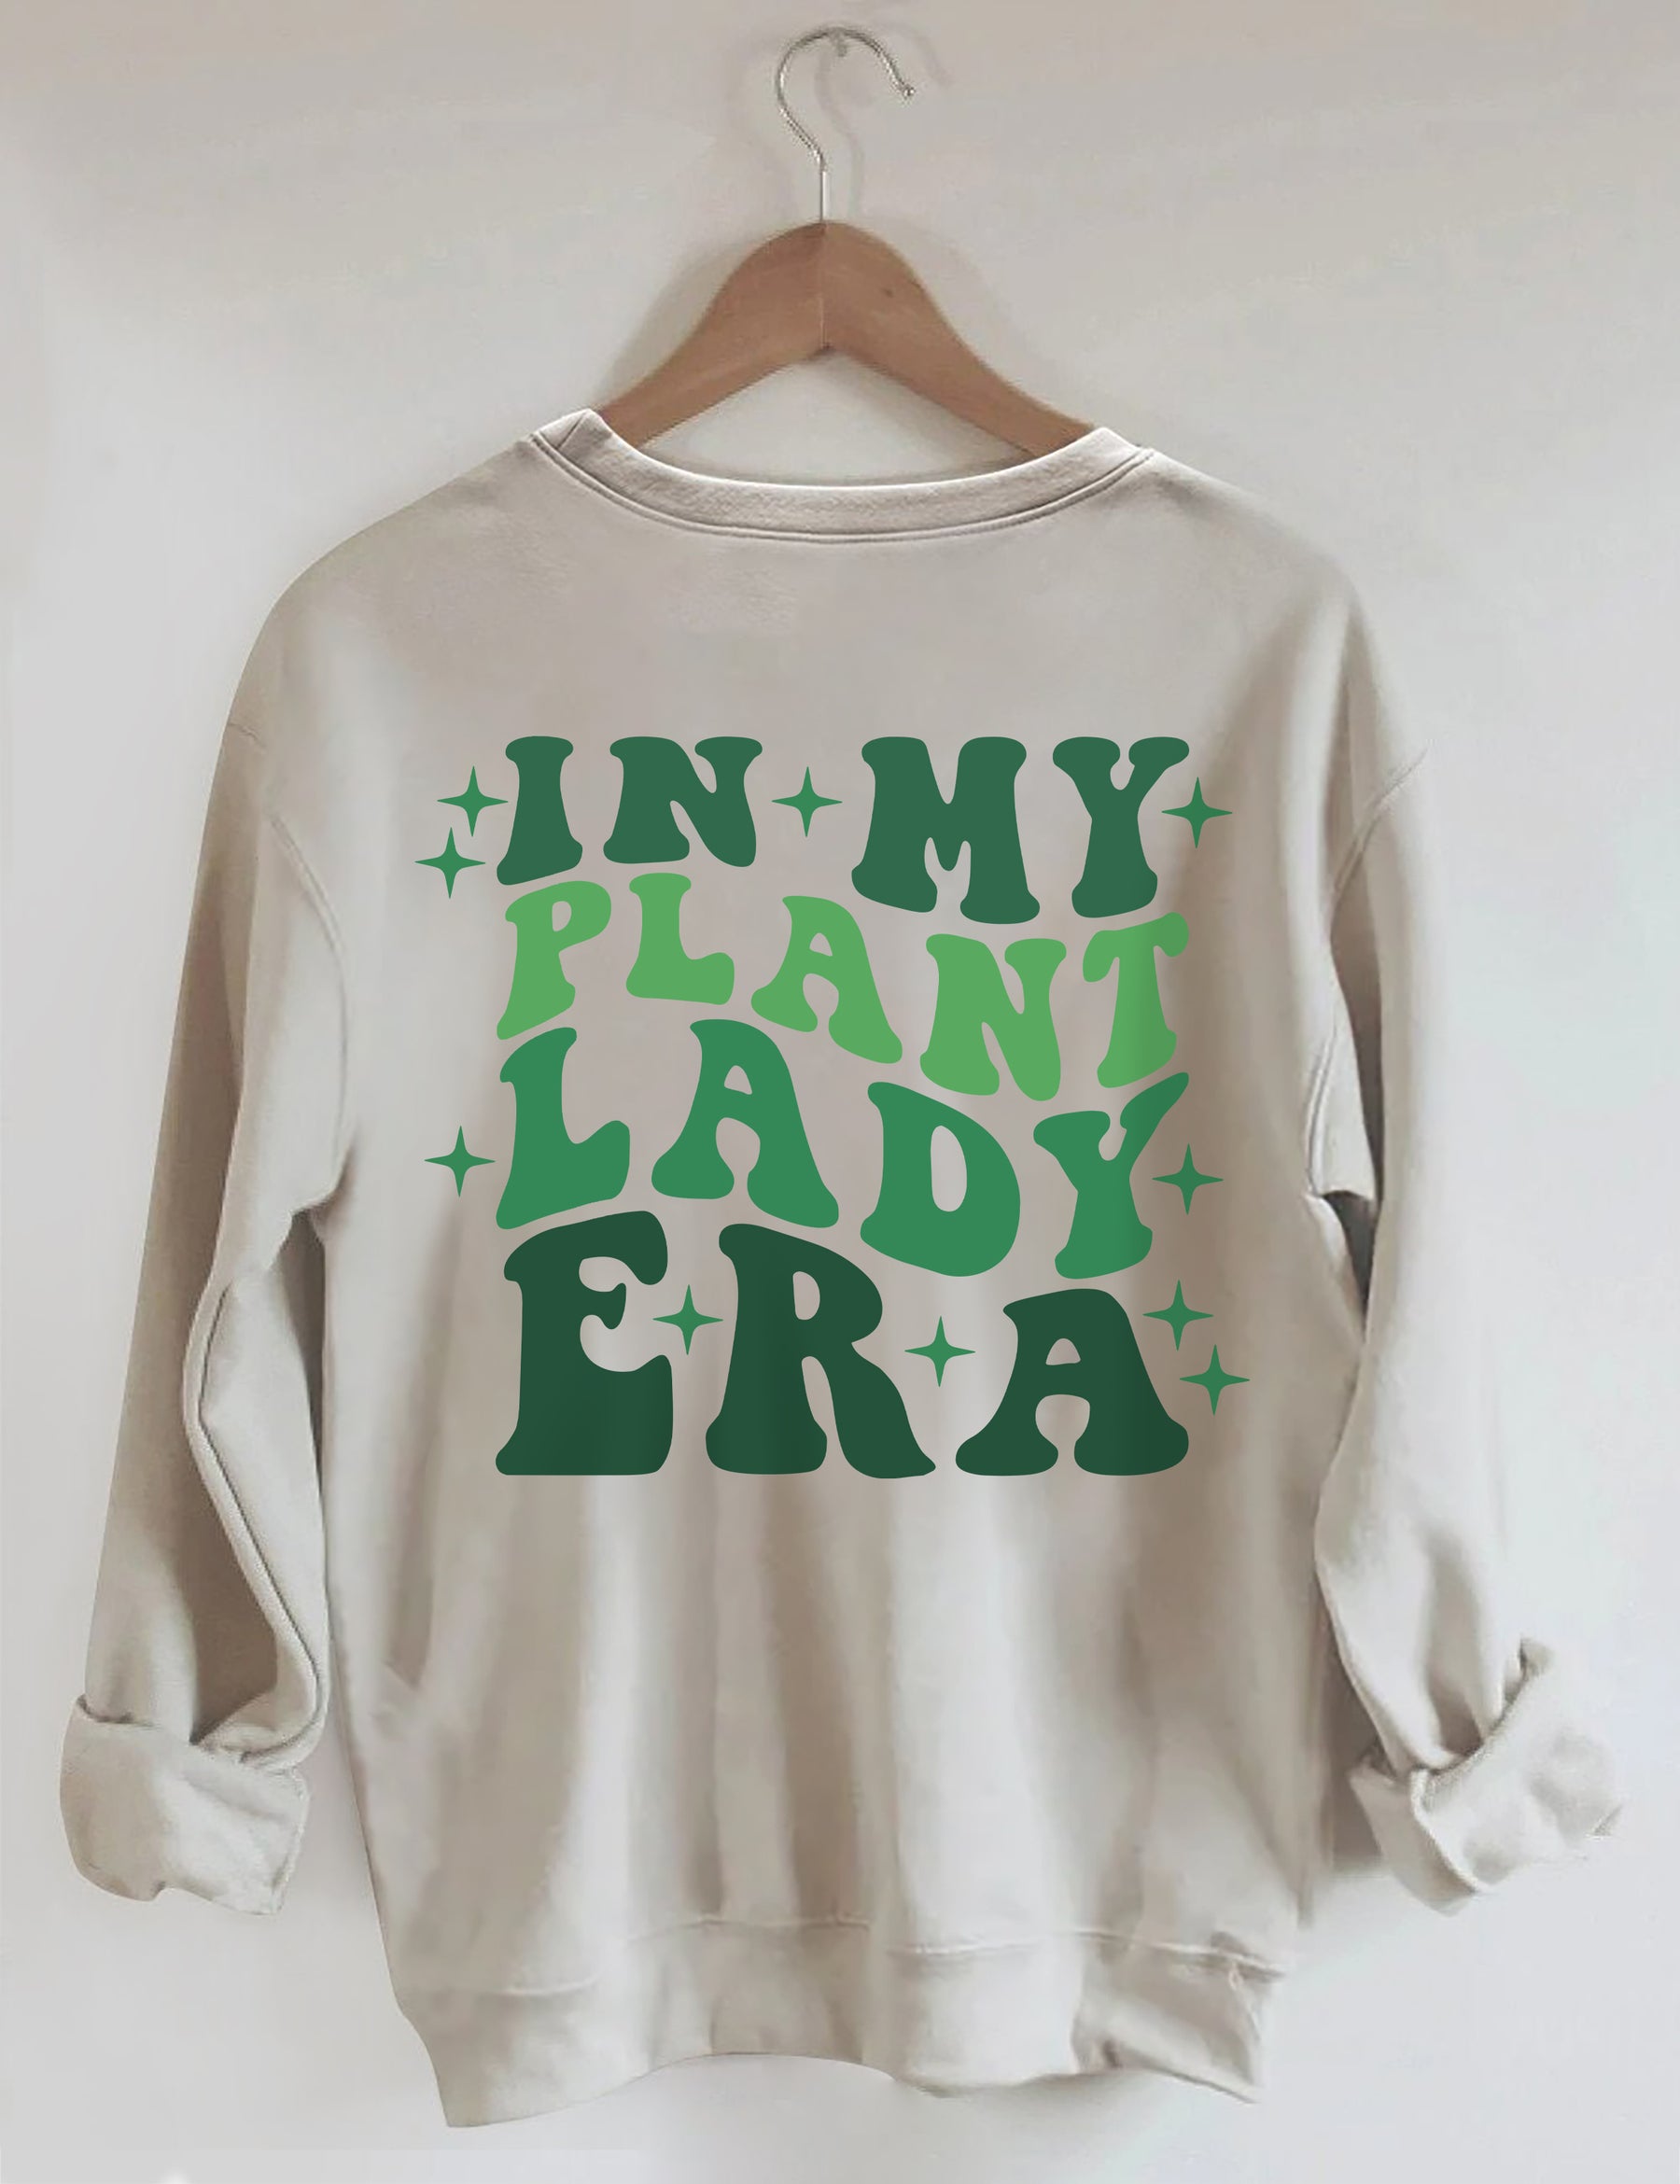 In My Plant Lady Era Sweatshirt